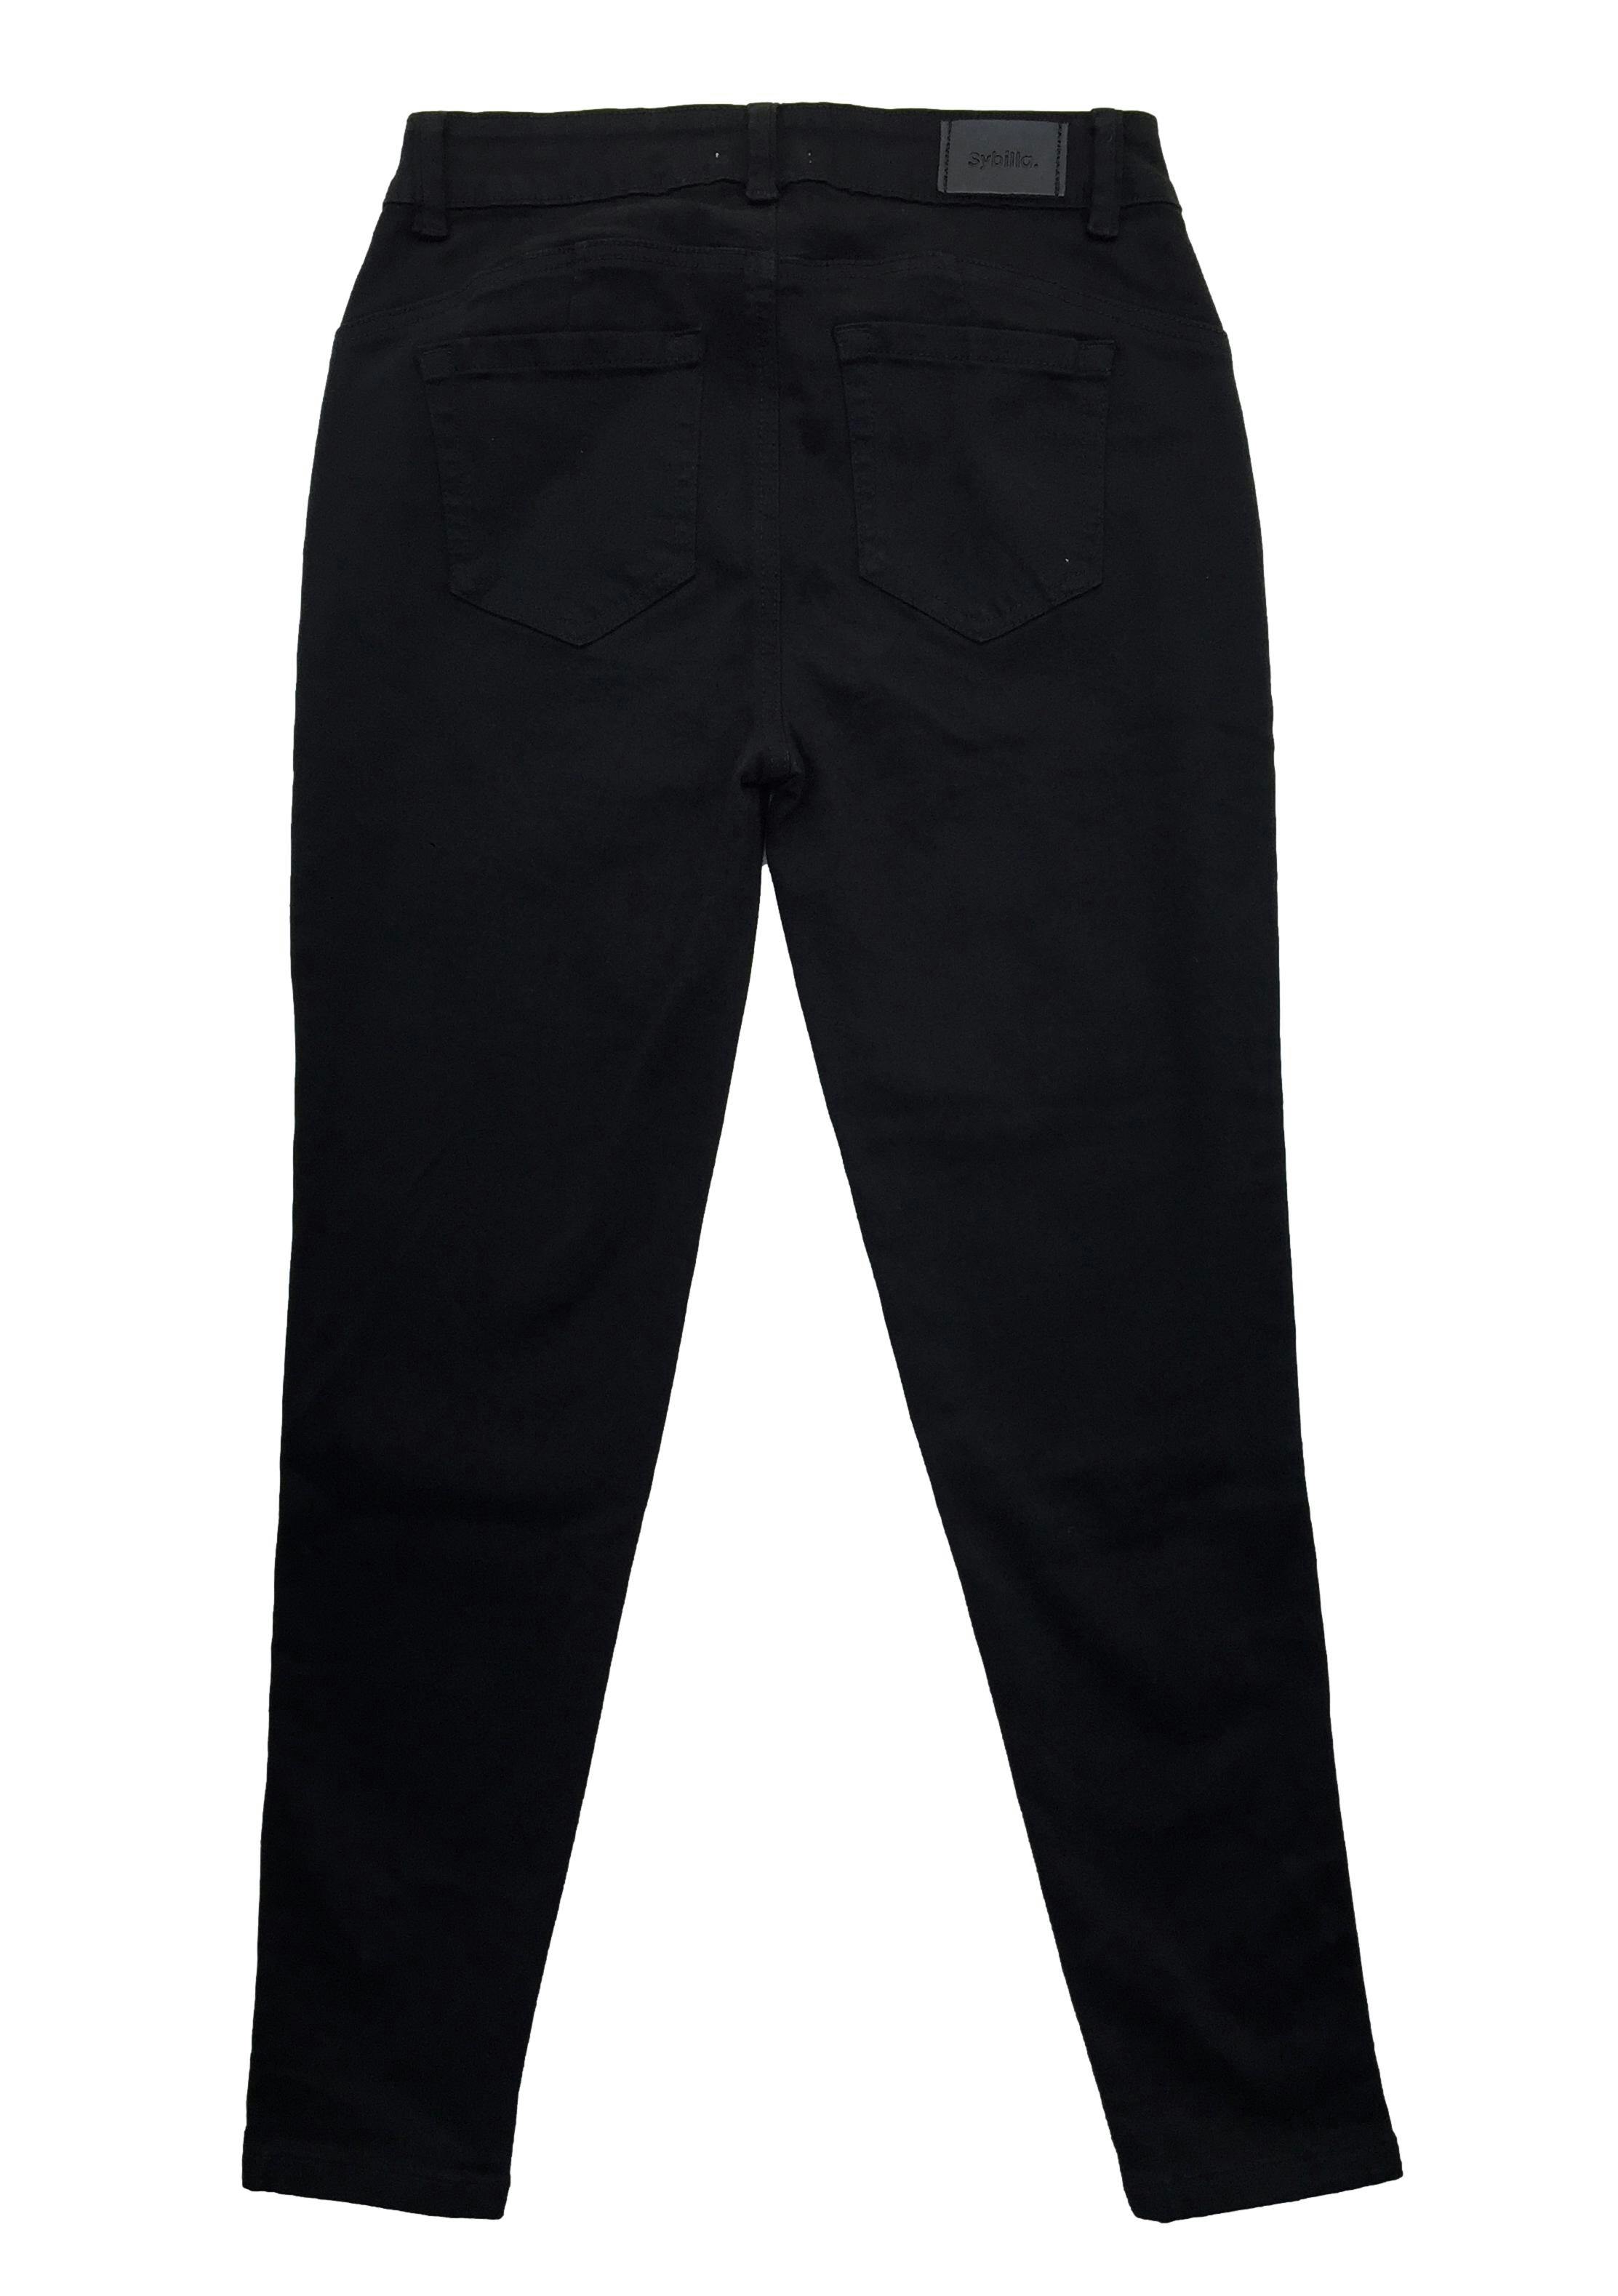 Skinny jean Sybilla negro con broches en la basta. Cintura 68cm Tiro 25cm Largo 90cm